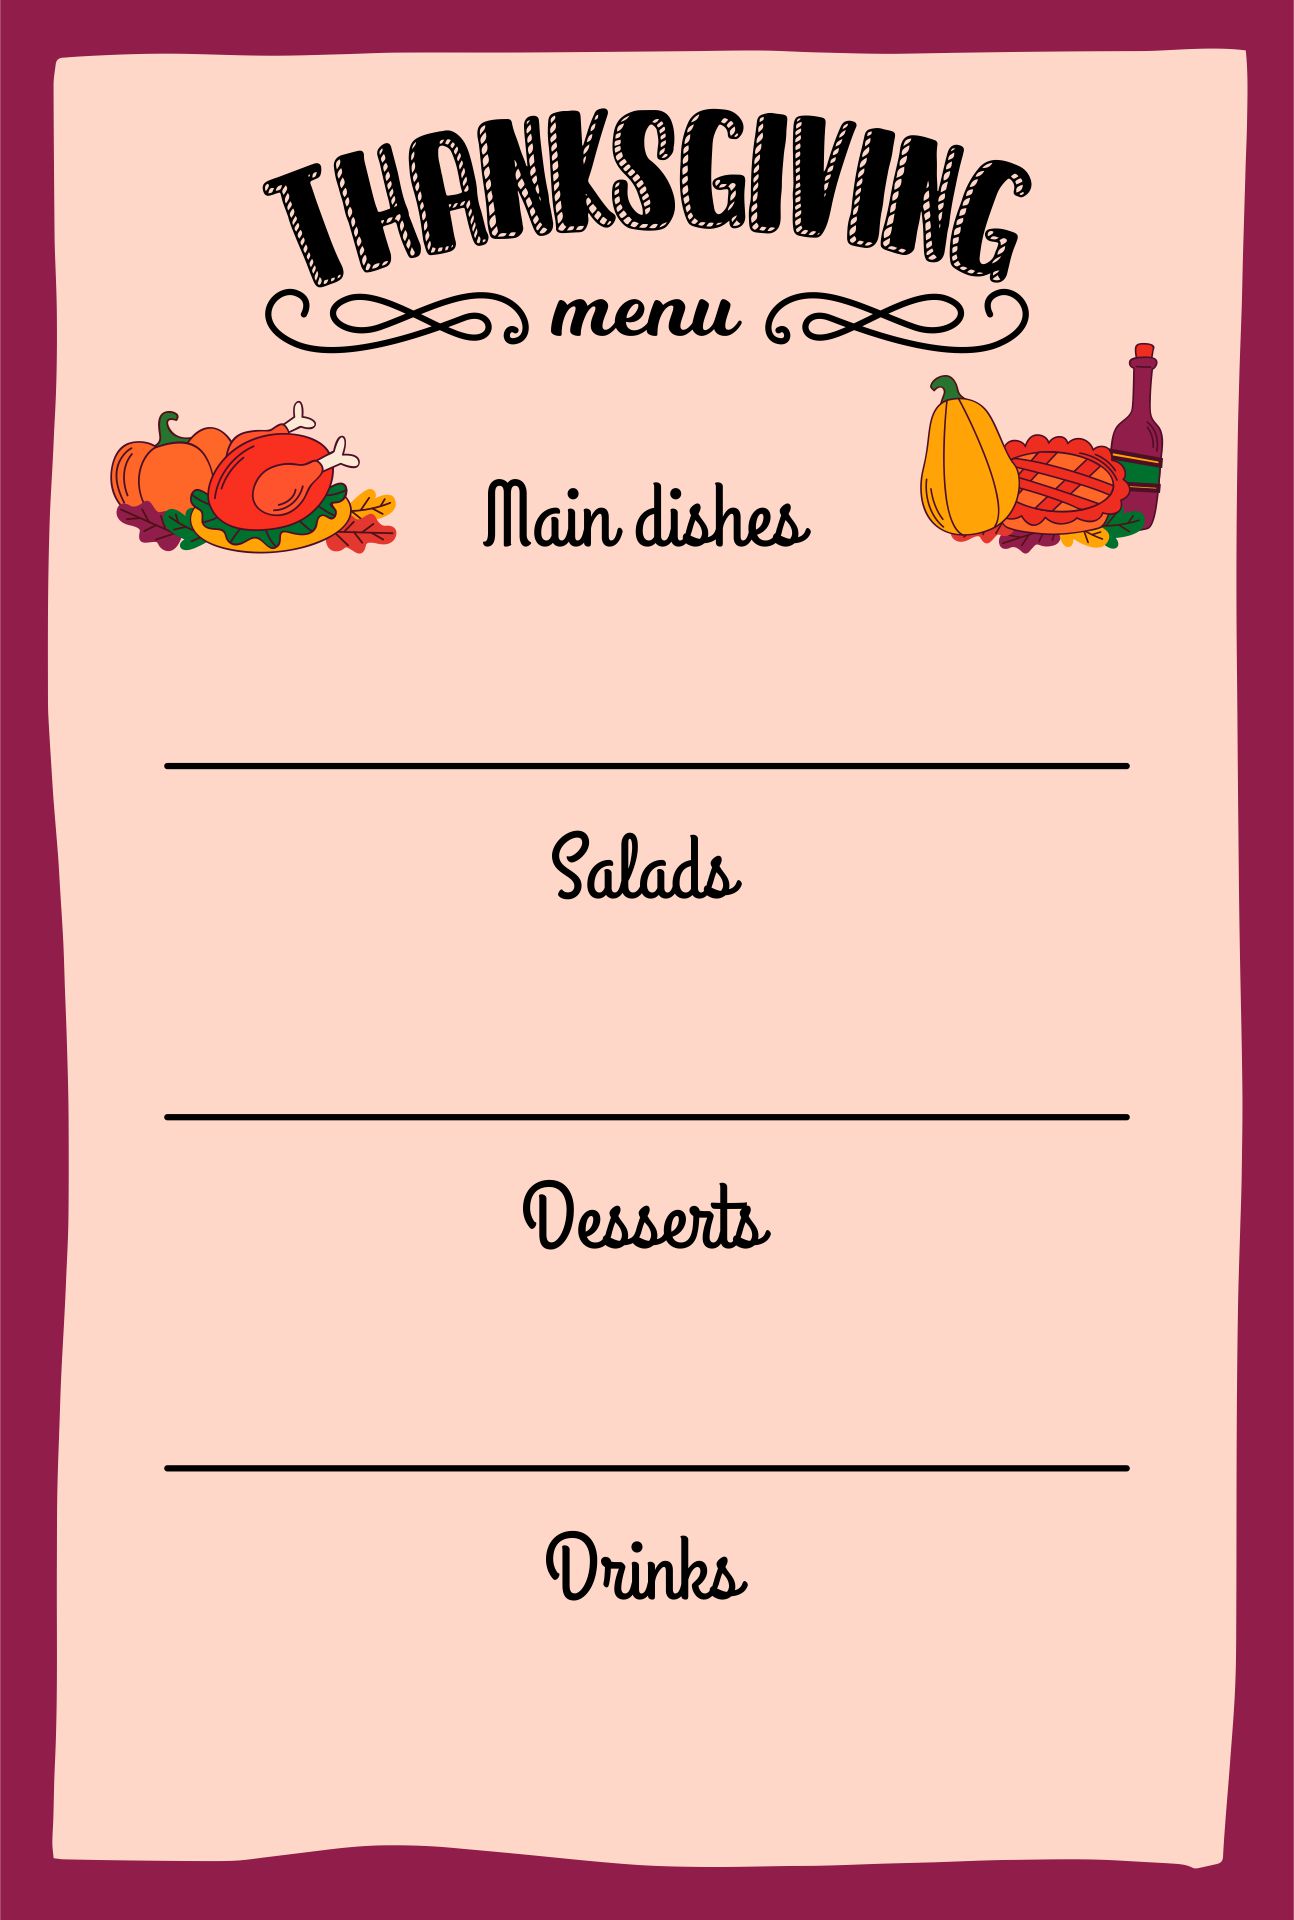 download-customizable-thanksgiving-menus-hgtv